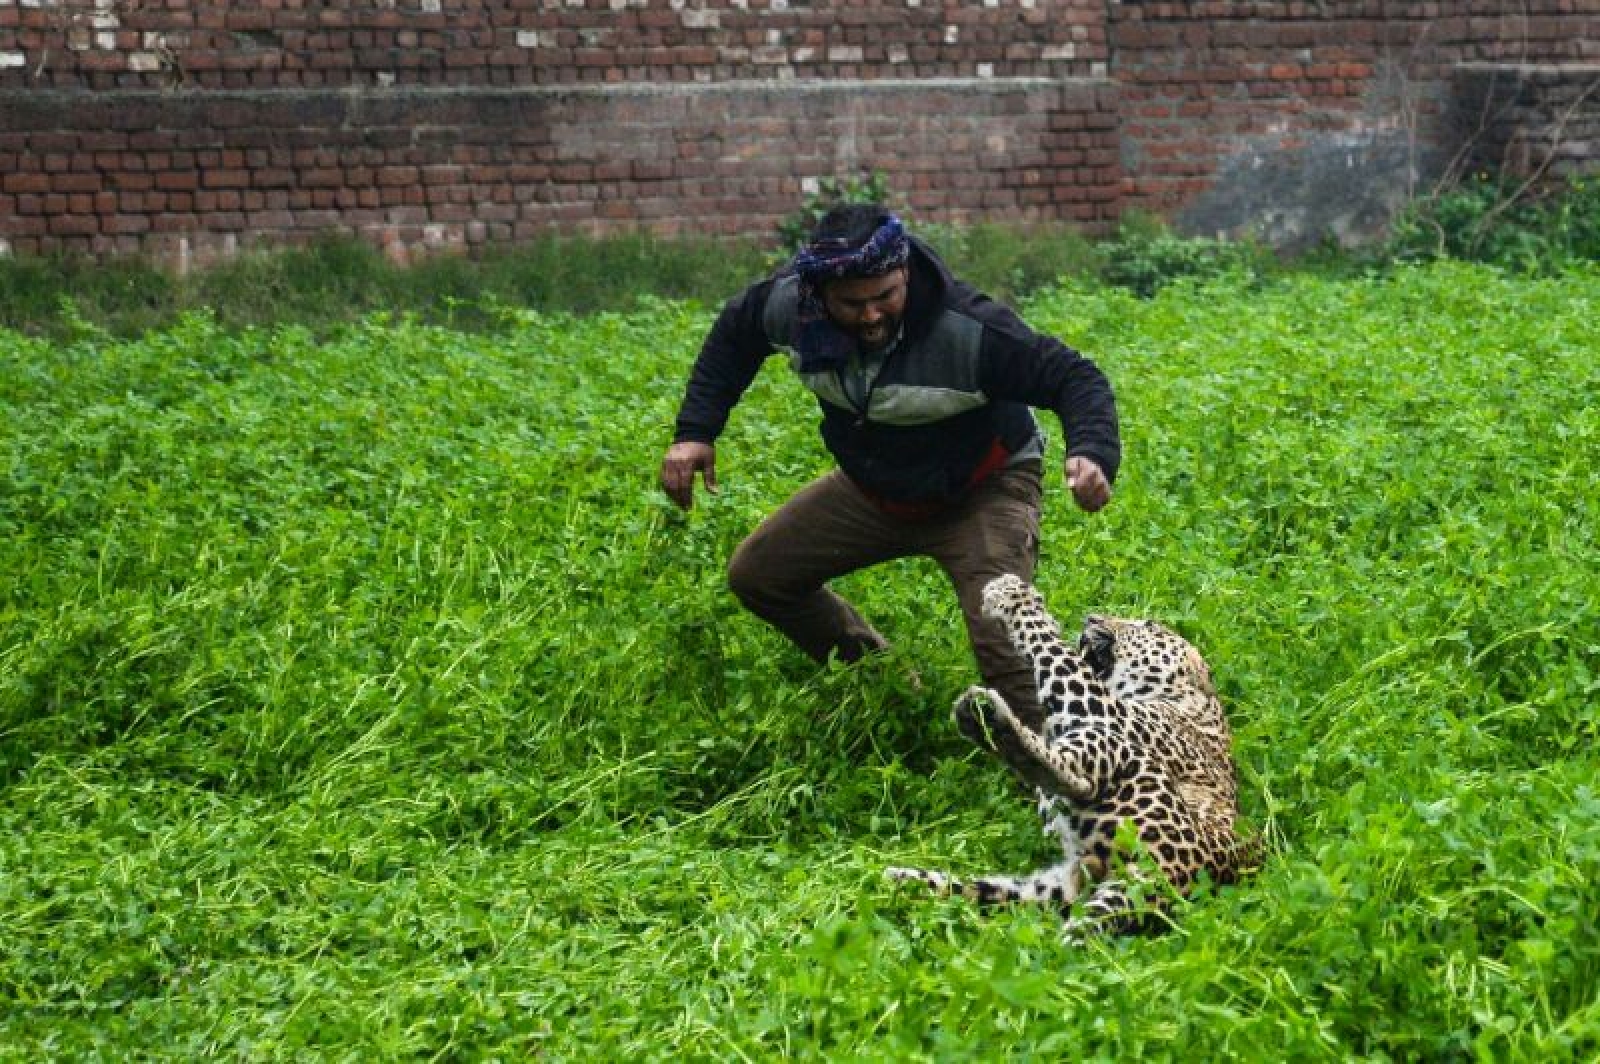 Нападение на человека. Ягуар нападает на человека. Нападающий леопард. Нападения леопардов на людей.